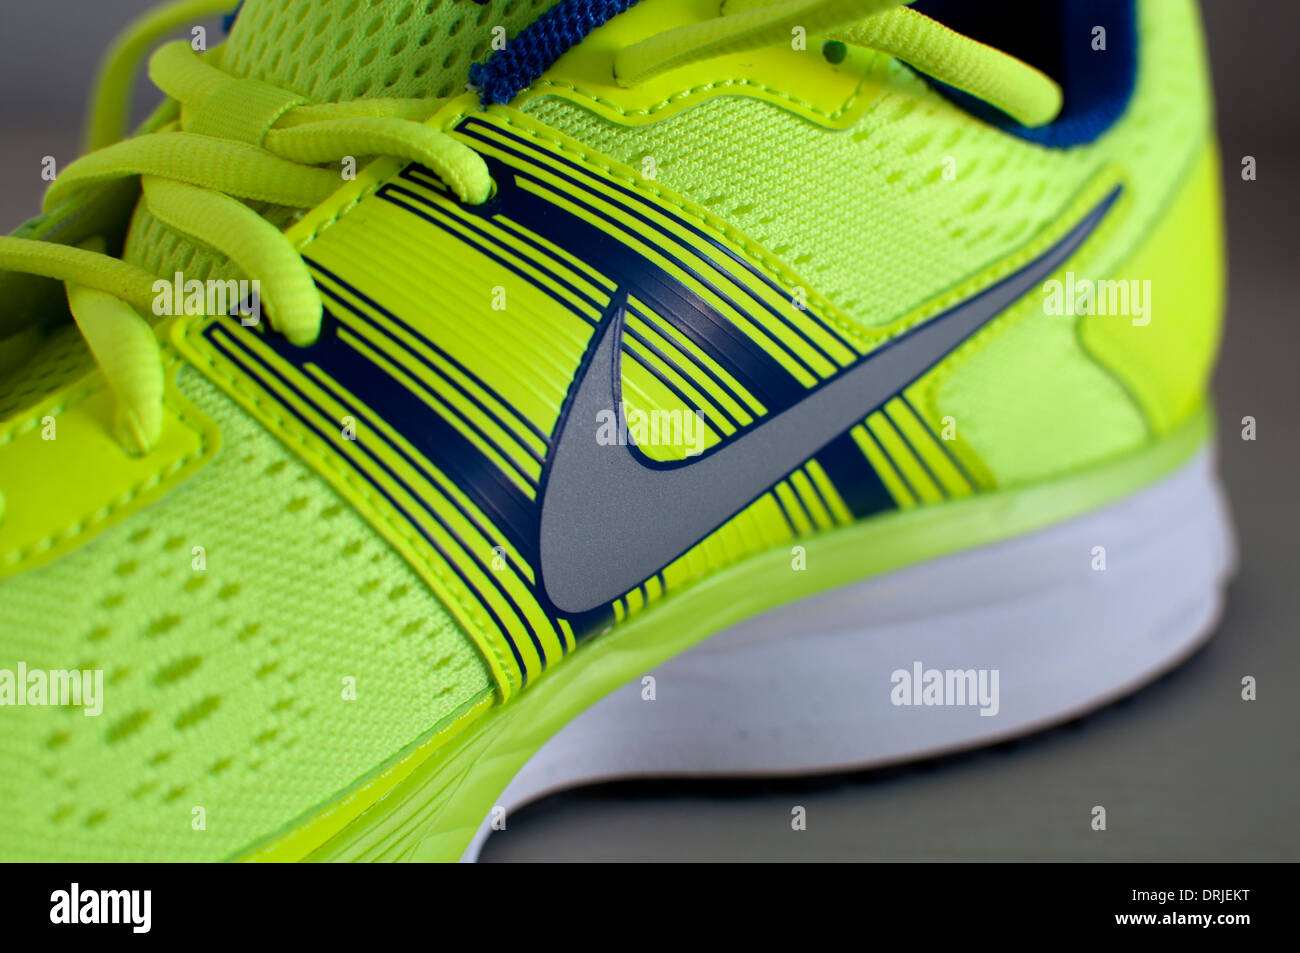 Nike Air Pegasus running shoe Stock Photo